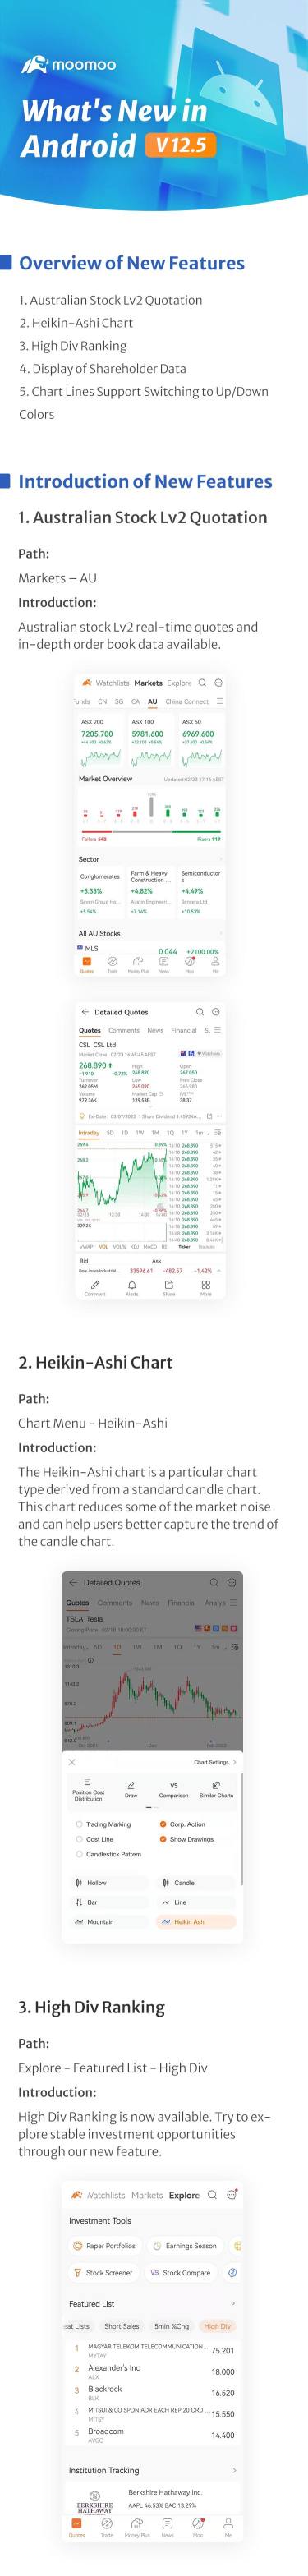 新增内容：Heikin-Ashi 排行榜现已在 Android v12.5 中推出